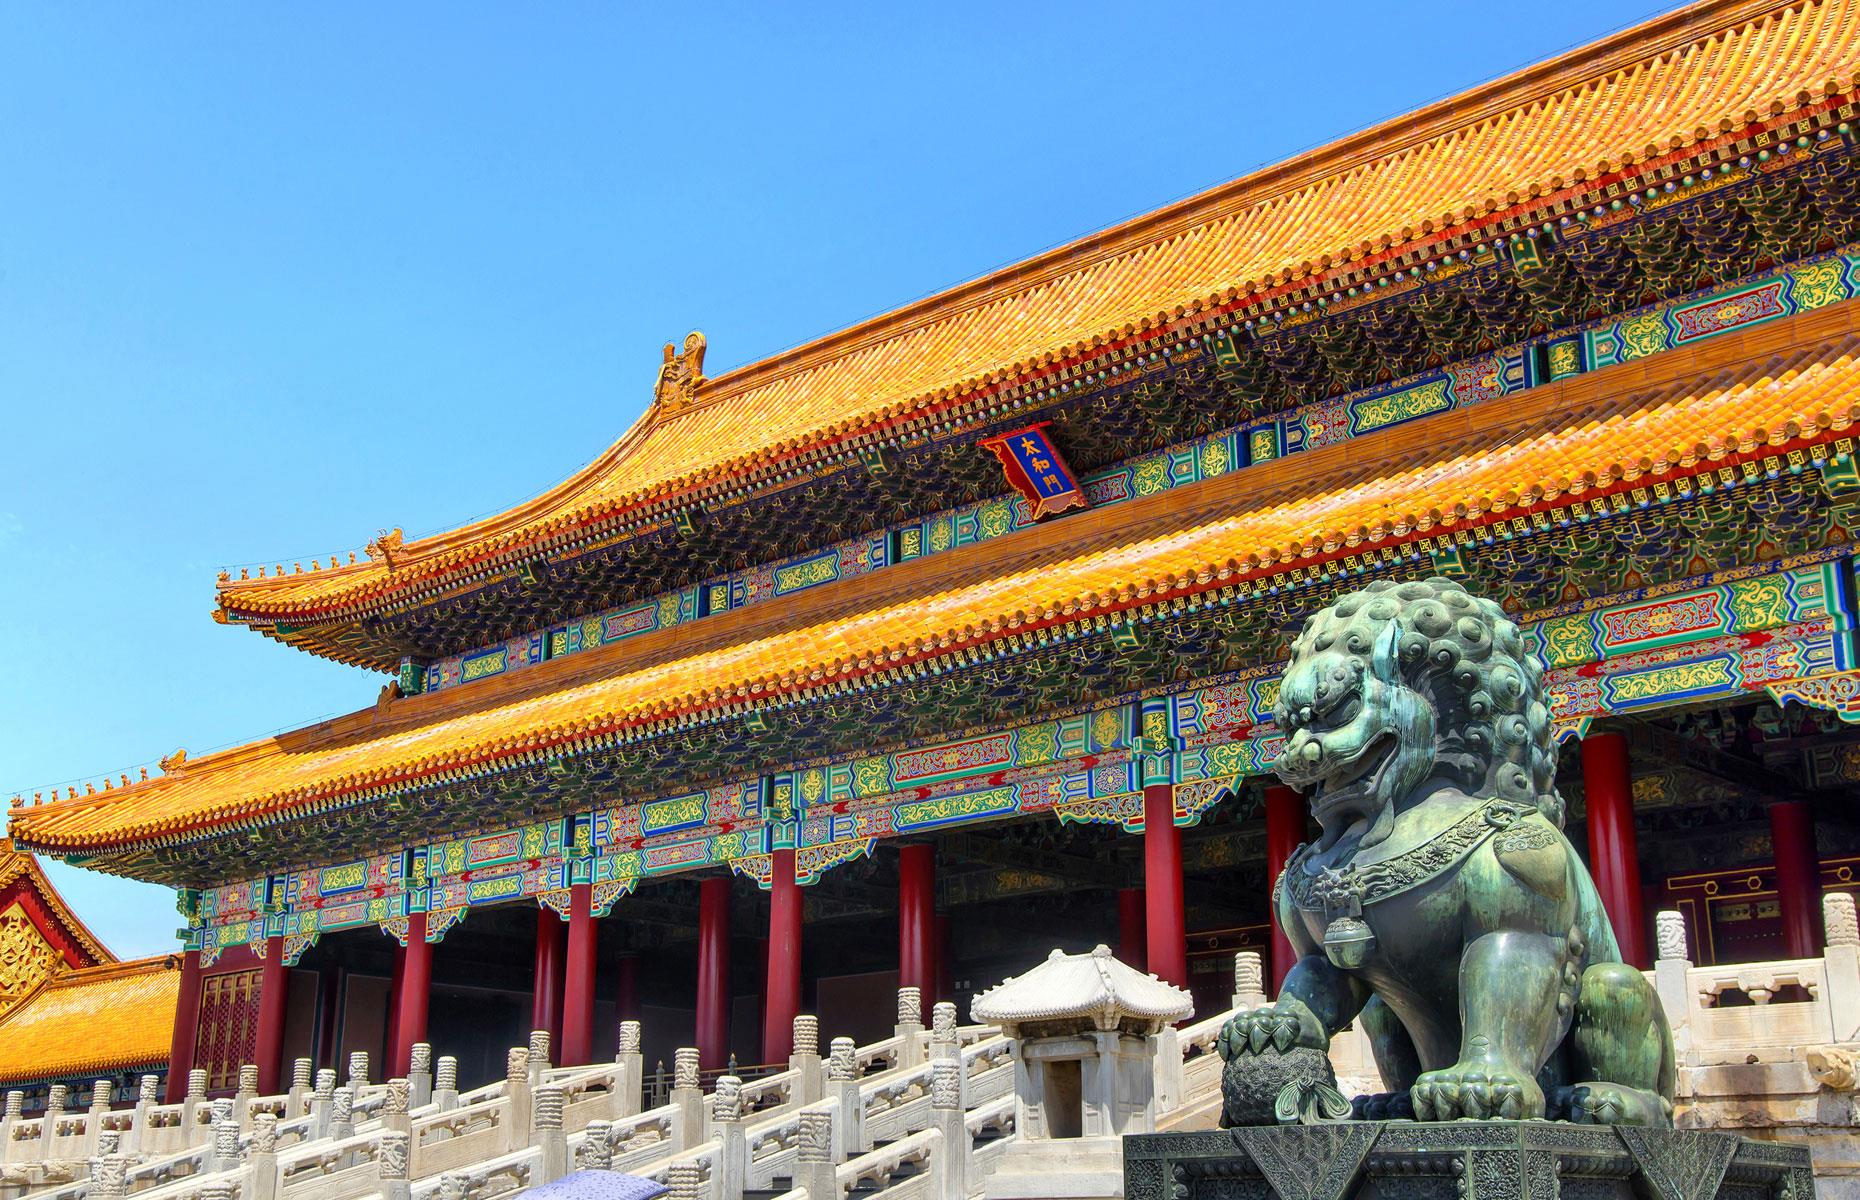 Forbidden City, China – $69.66 billion+ (£53bn+)